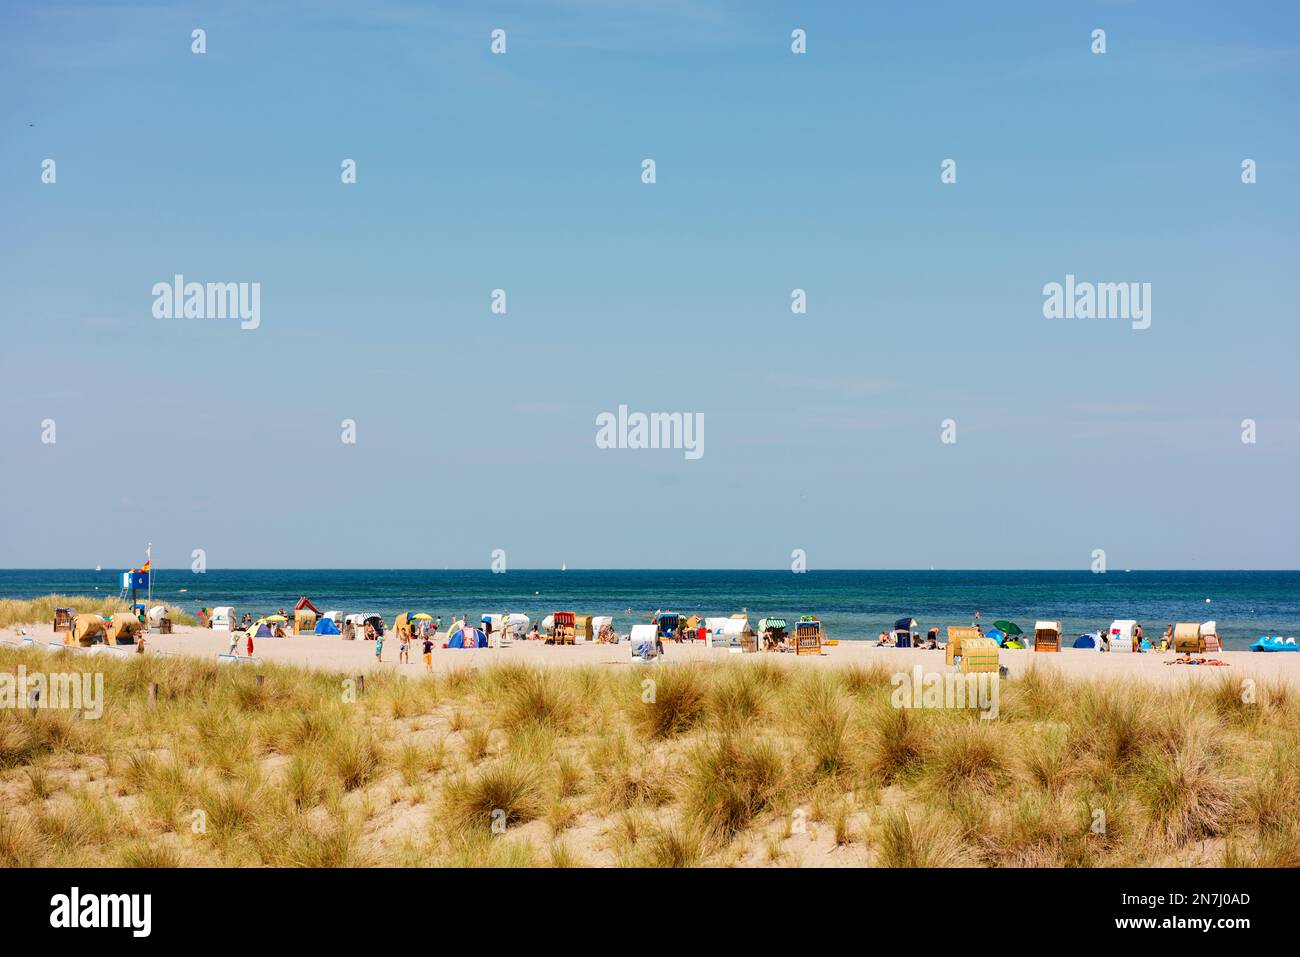 Durante le vacanze estive, le spiagge di Heiligenhafen sono riempite da cestini per il salone della spiaggia, o strandkorb in tedesco. Foto Stock